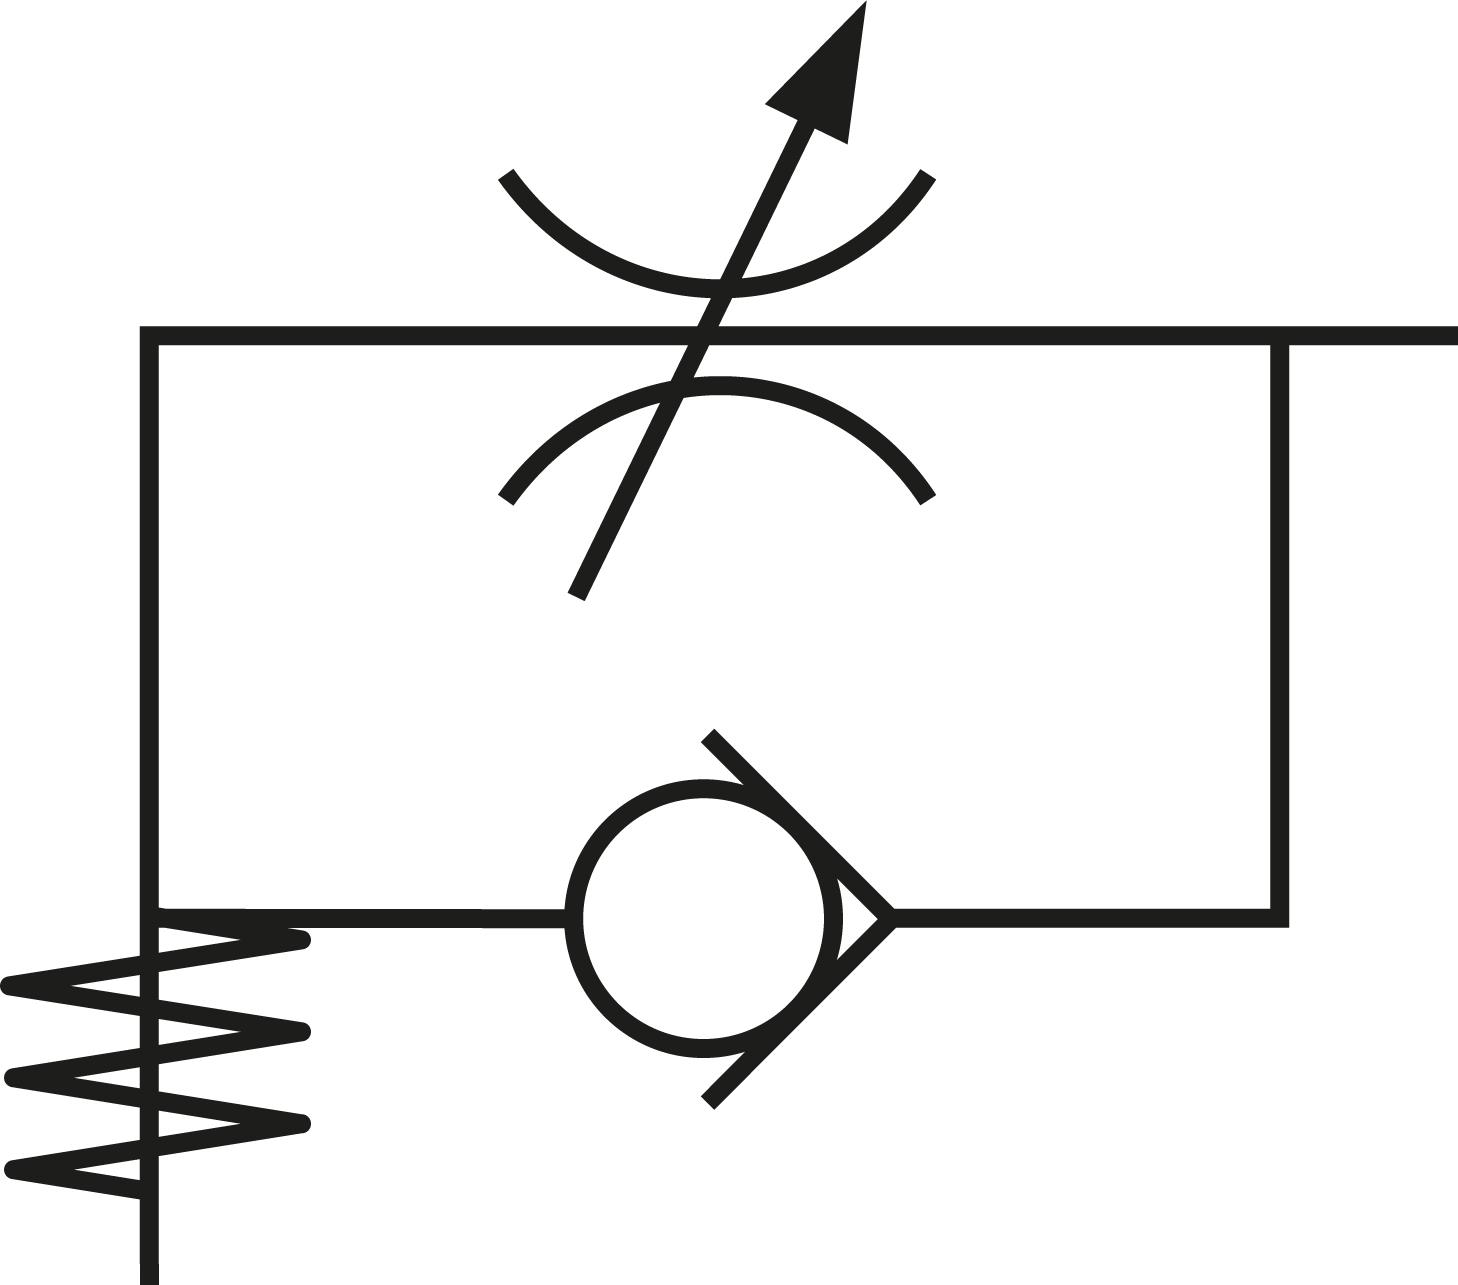 Schematic symbol: Exhaust air flow